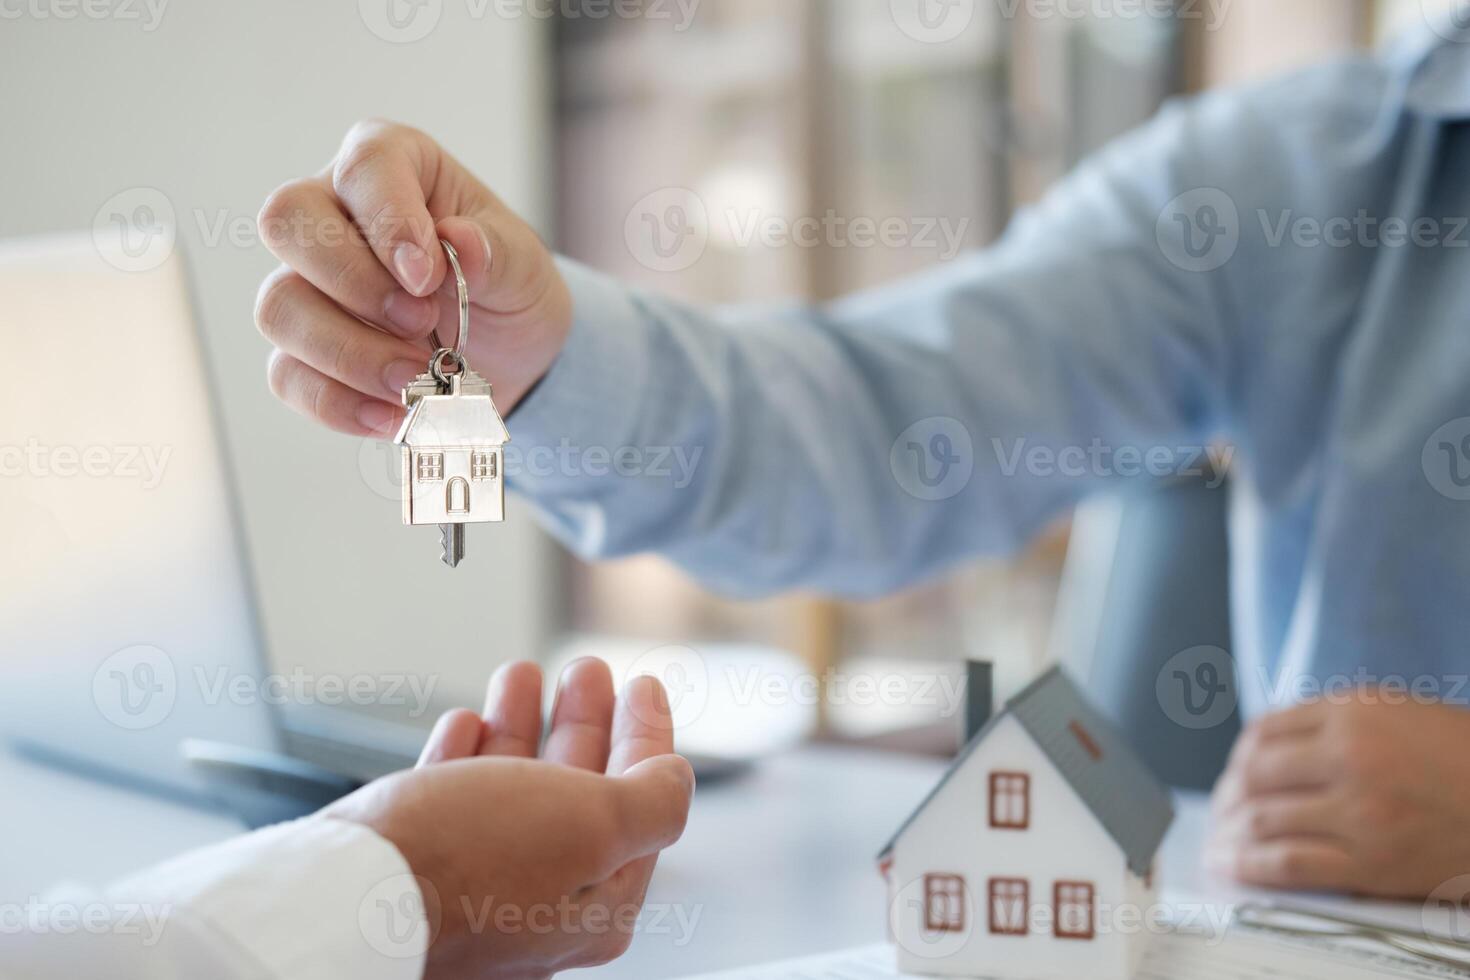 el real inmuebles agente manos el llaves a el cliente. real inmuebles inversión préstamos foto